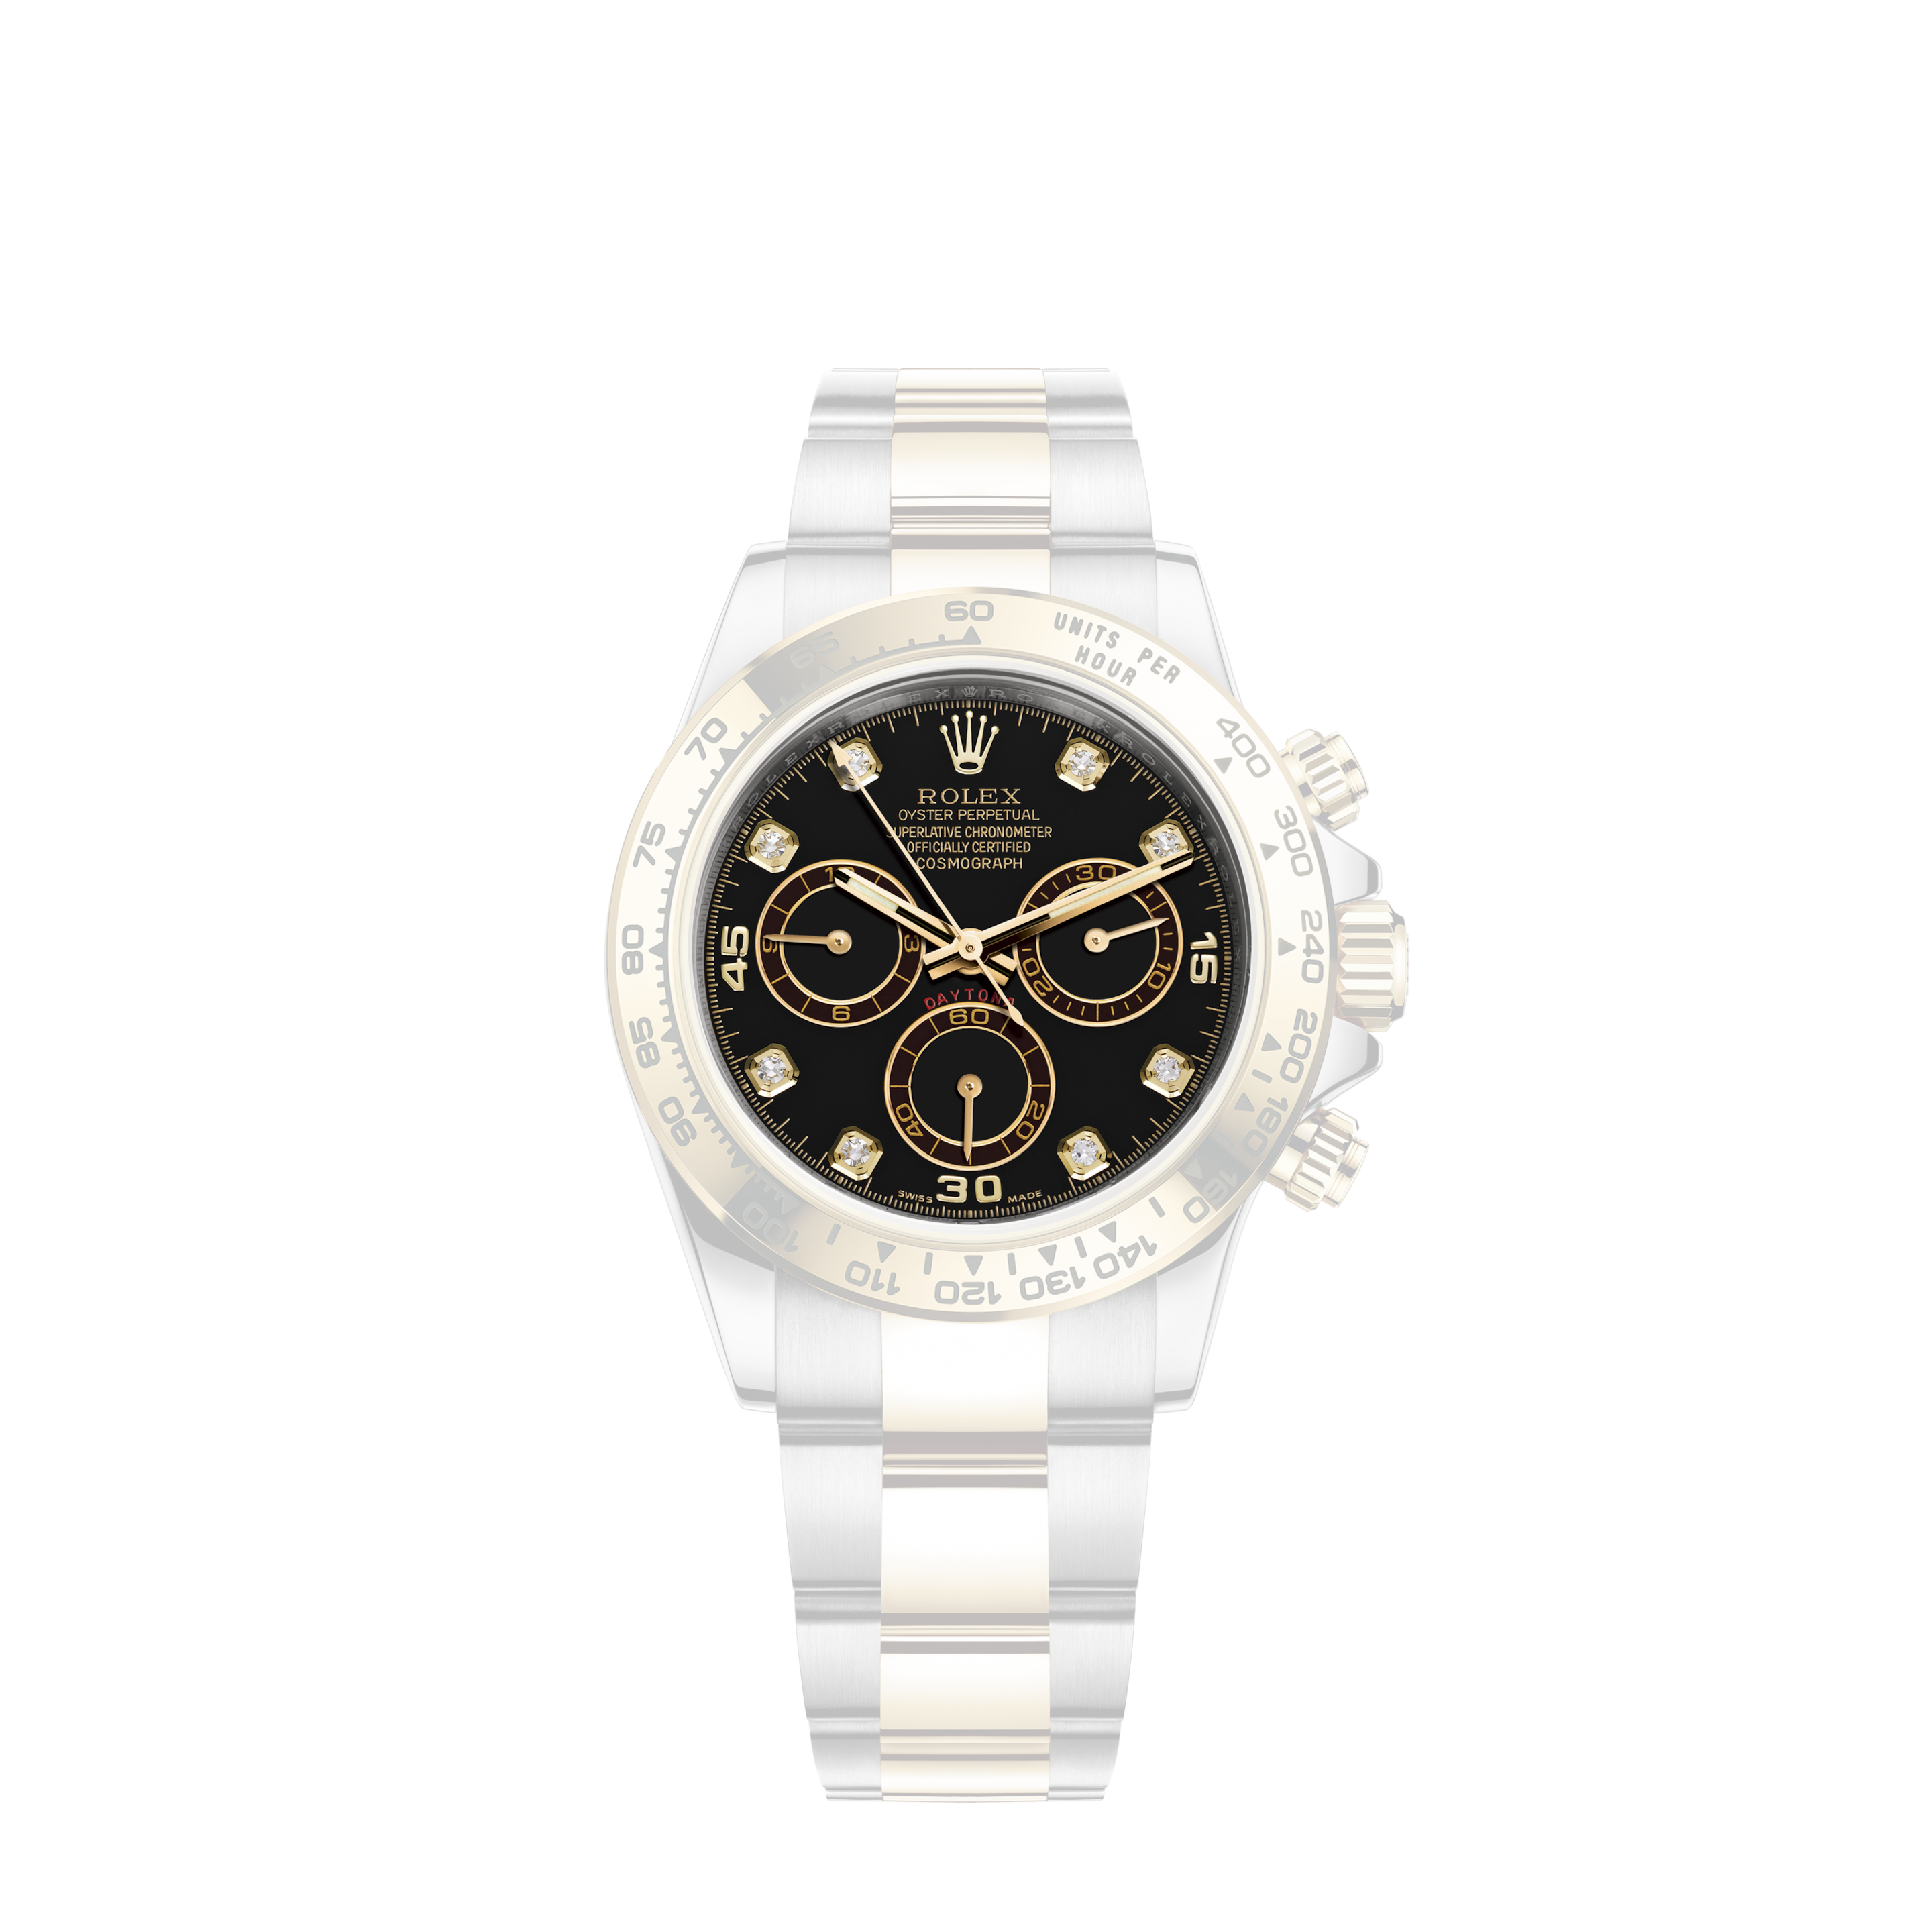 Rolex Oyster Perpetual Date 6917 26mm Steel & GoldRolex Oyster Perpetual Date 69190 Ladies Watch